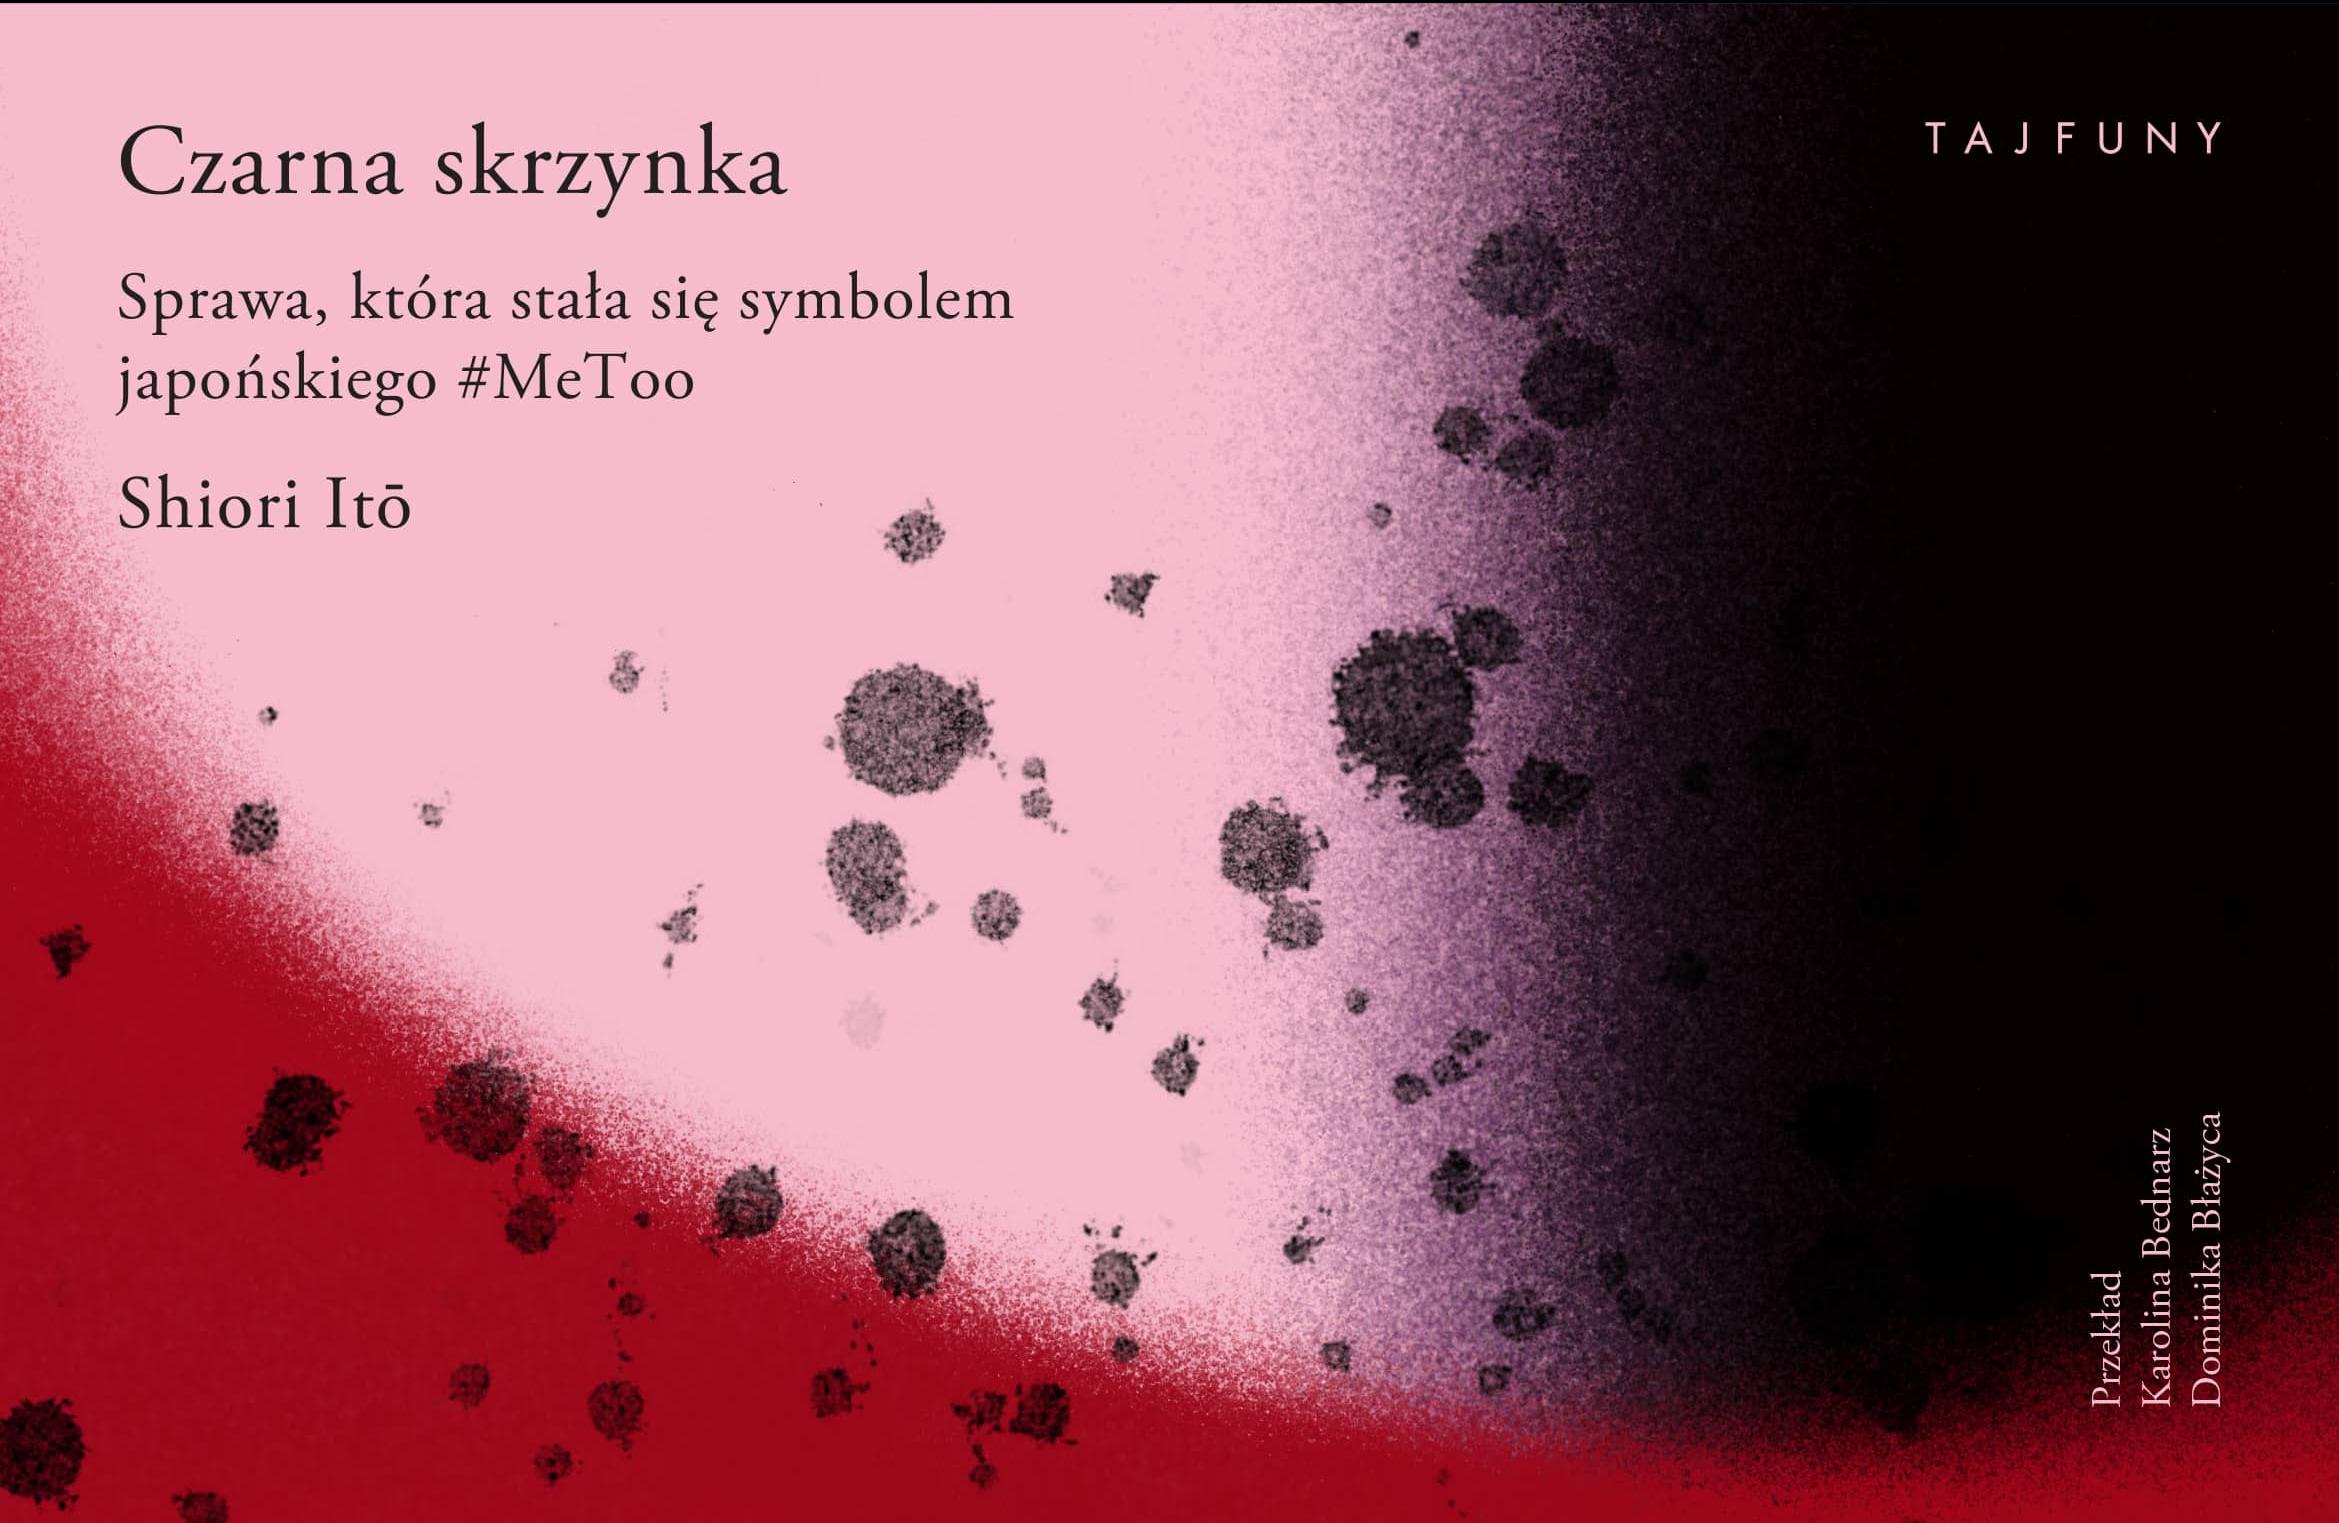 czarna_skrzynka_okladka - materiały od wydawcy